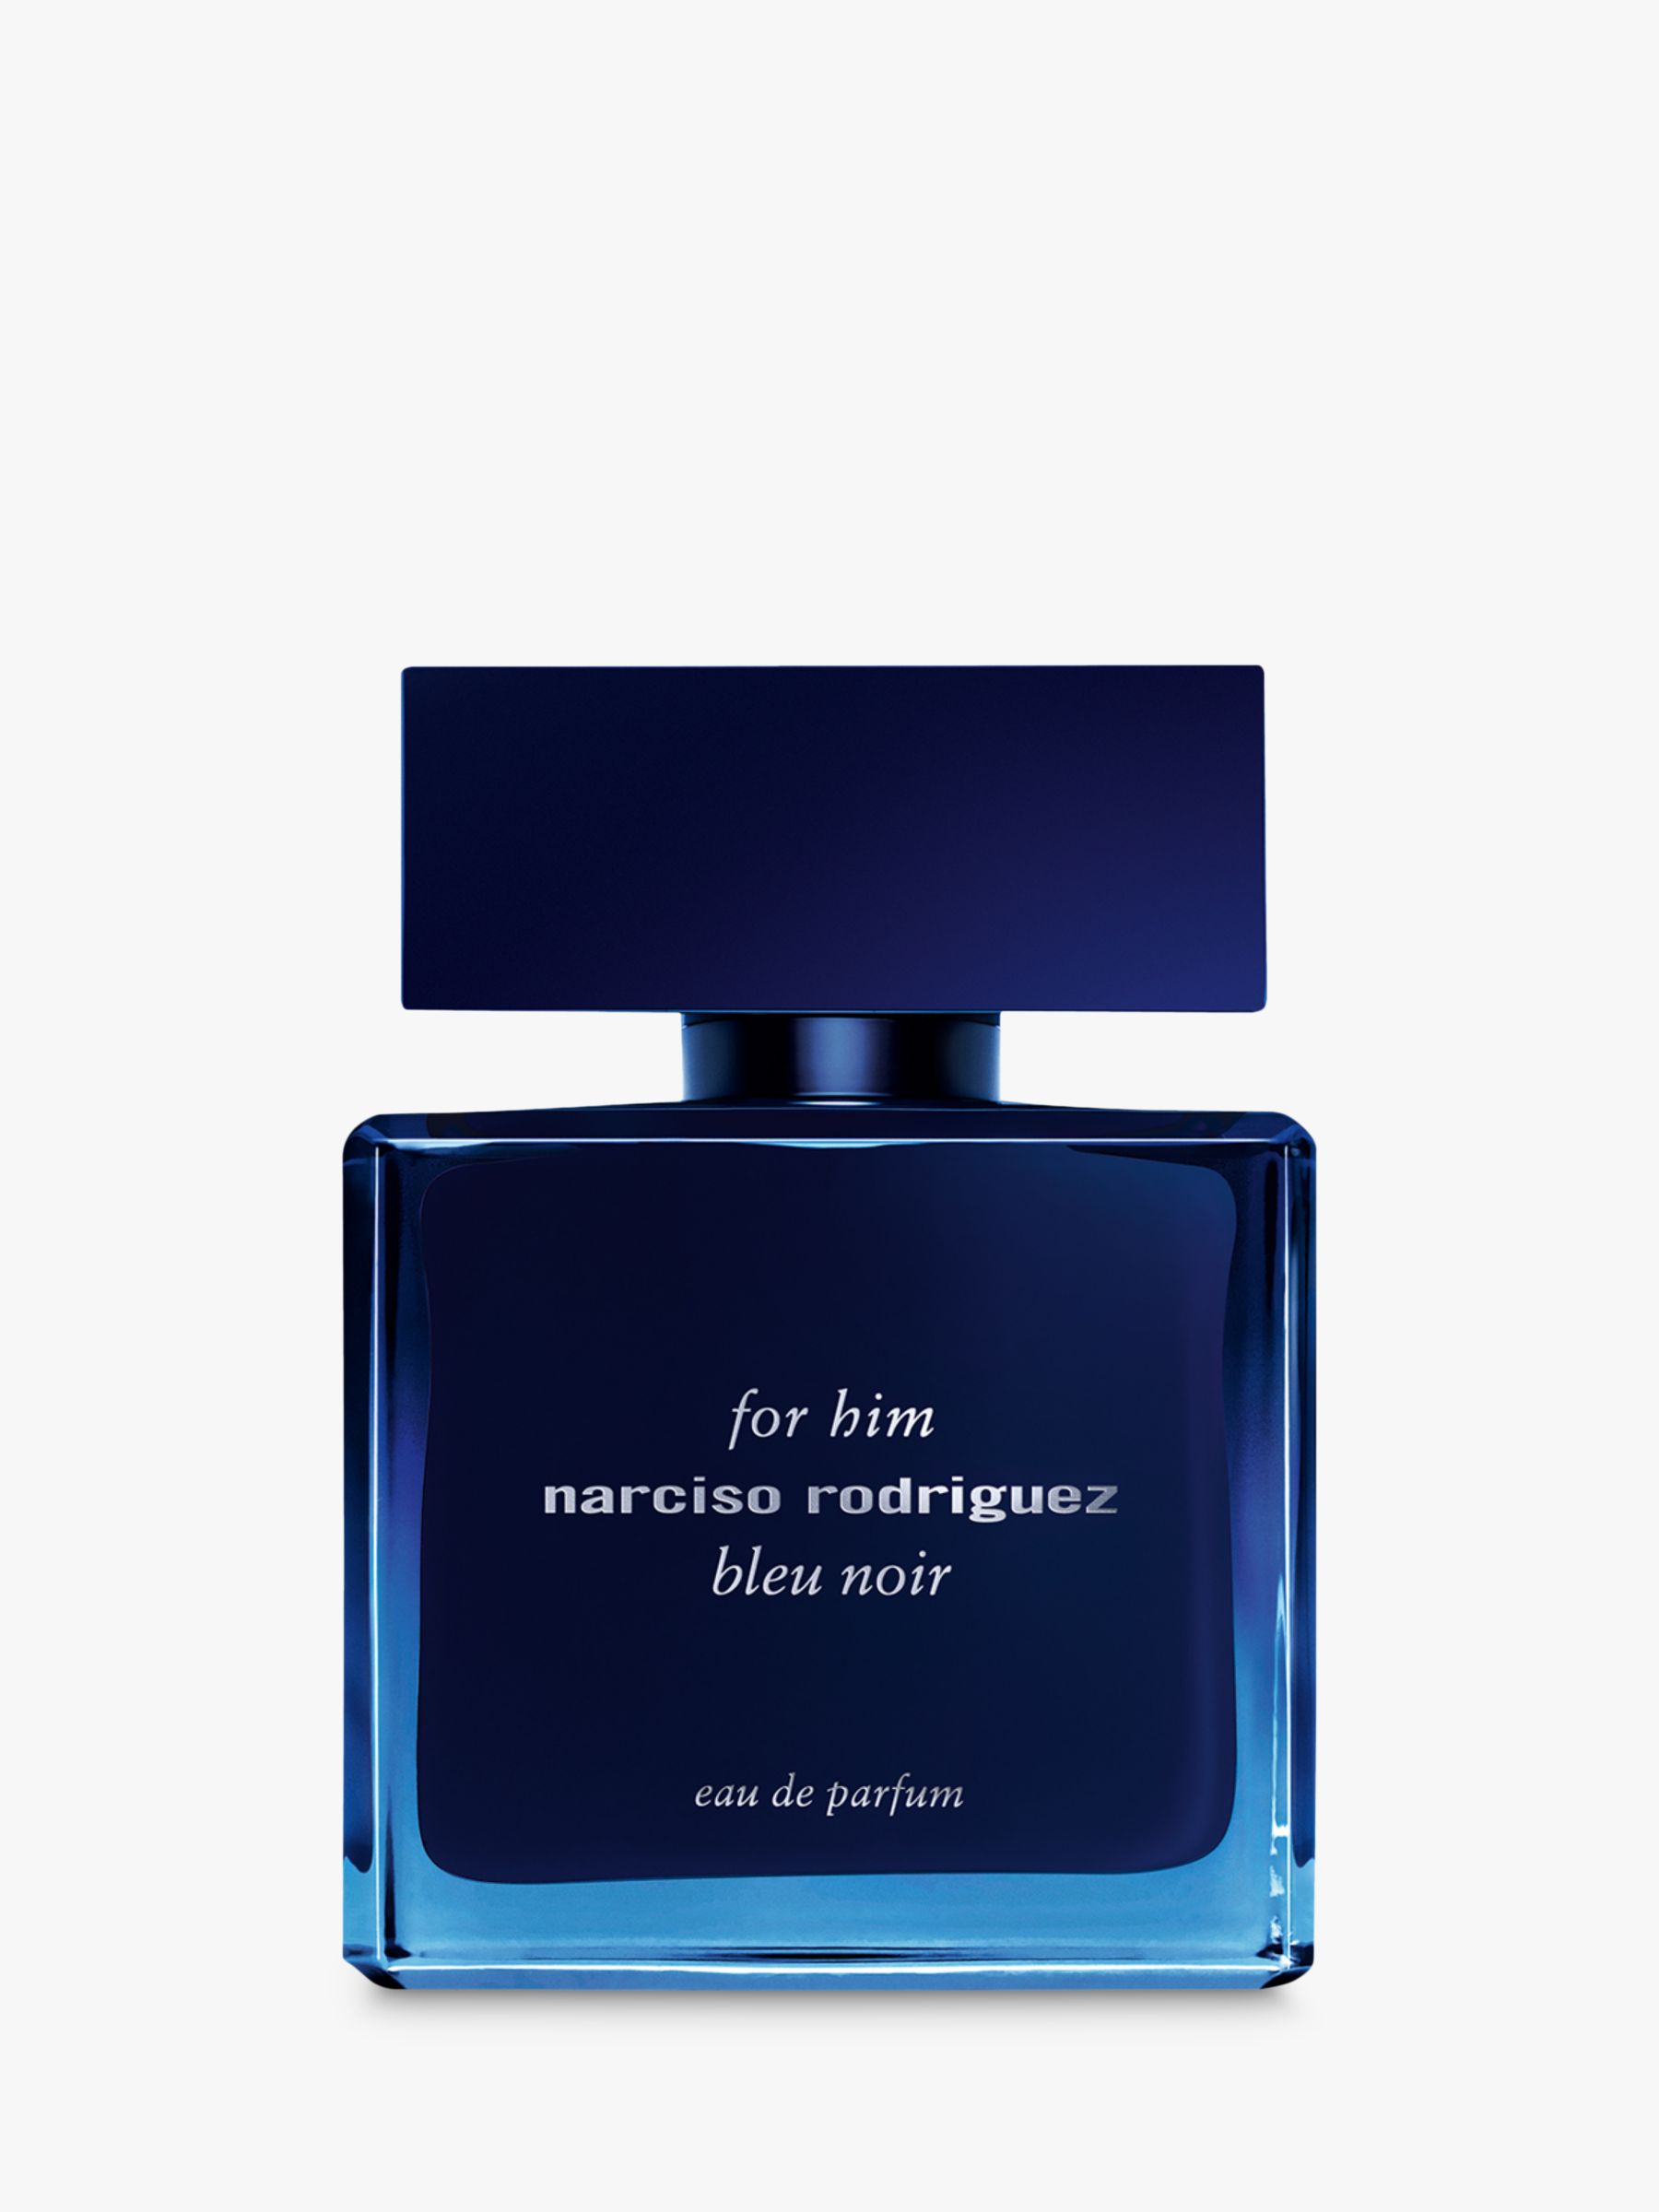 Narciso Rodriguez Bleu Noir For Him Eau de Parfum, 50ml 1